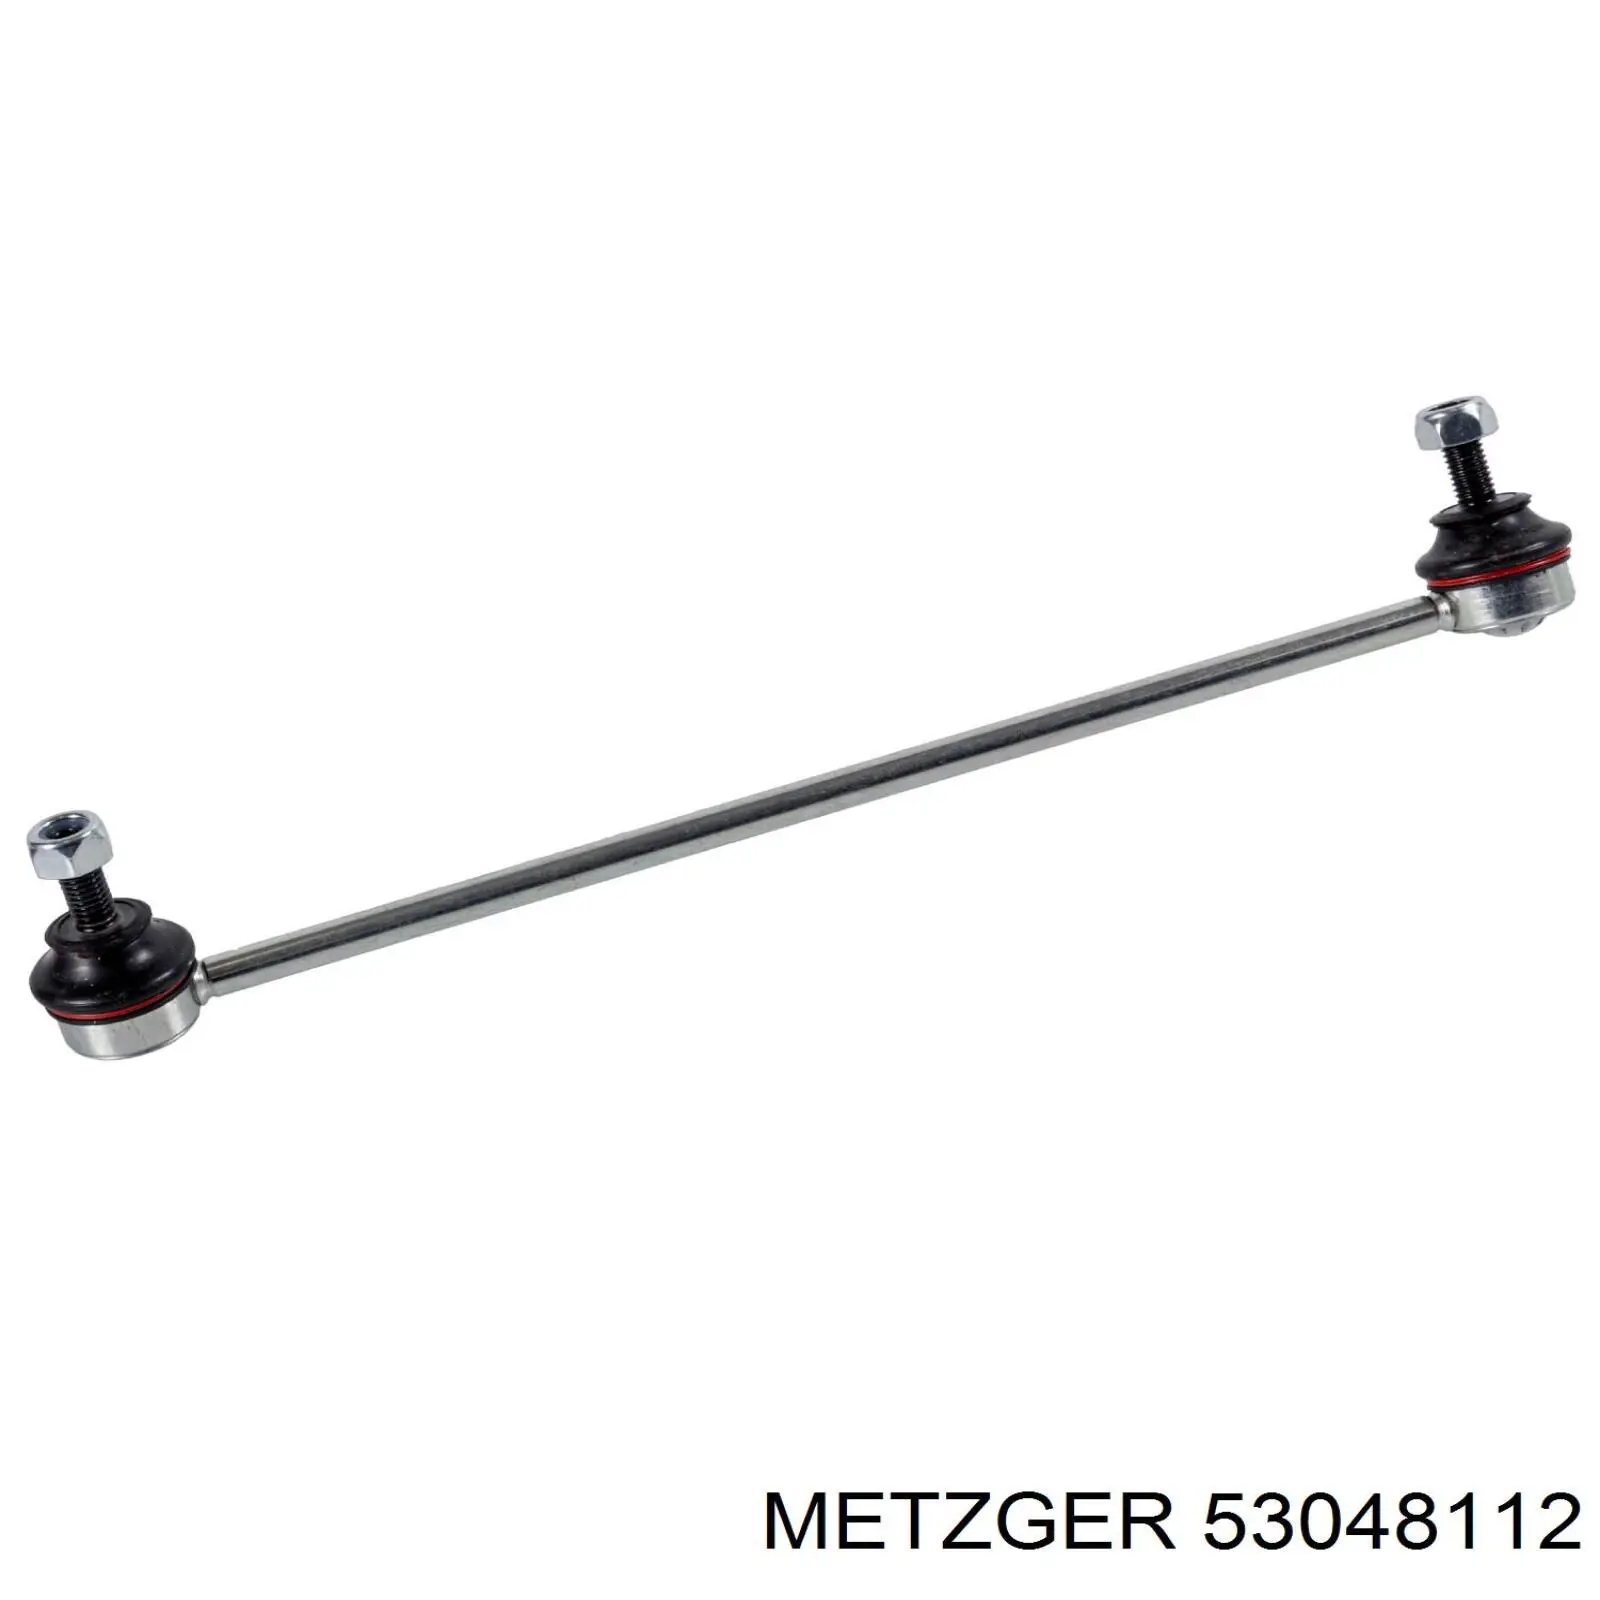 53048112 Metzger barra estabilizadora delantera derecha